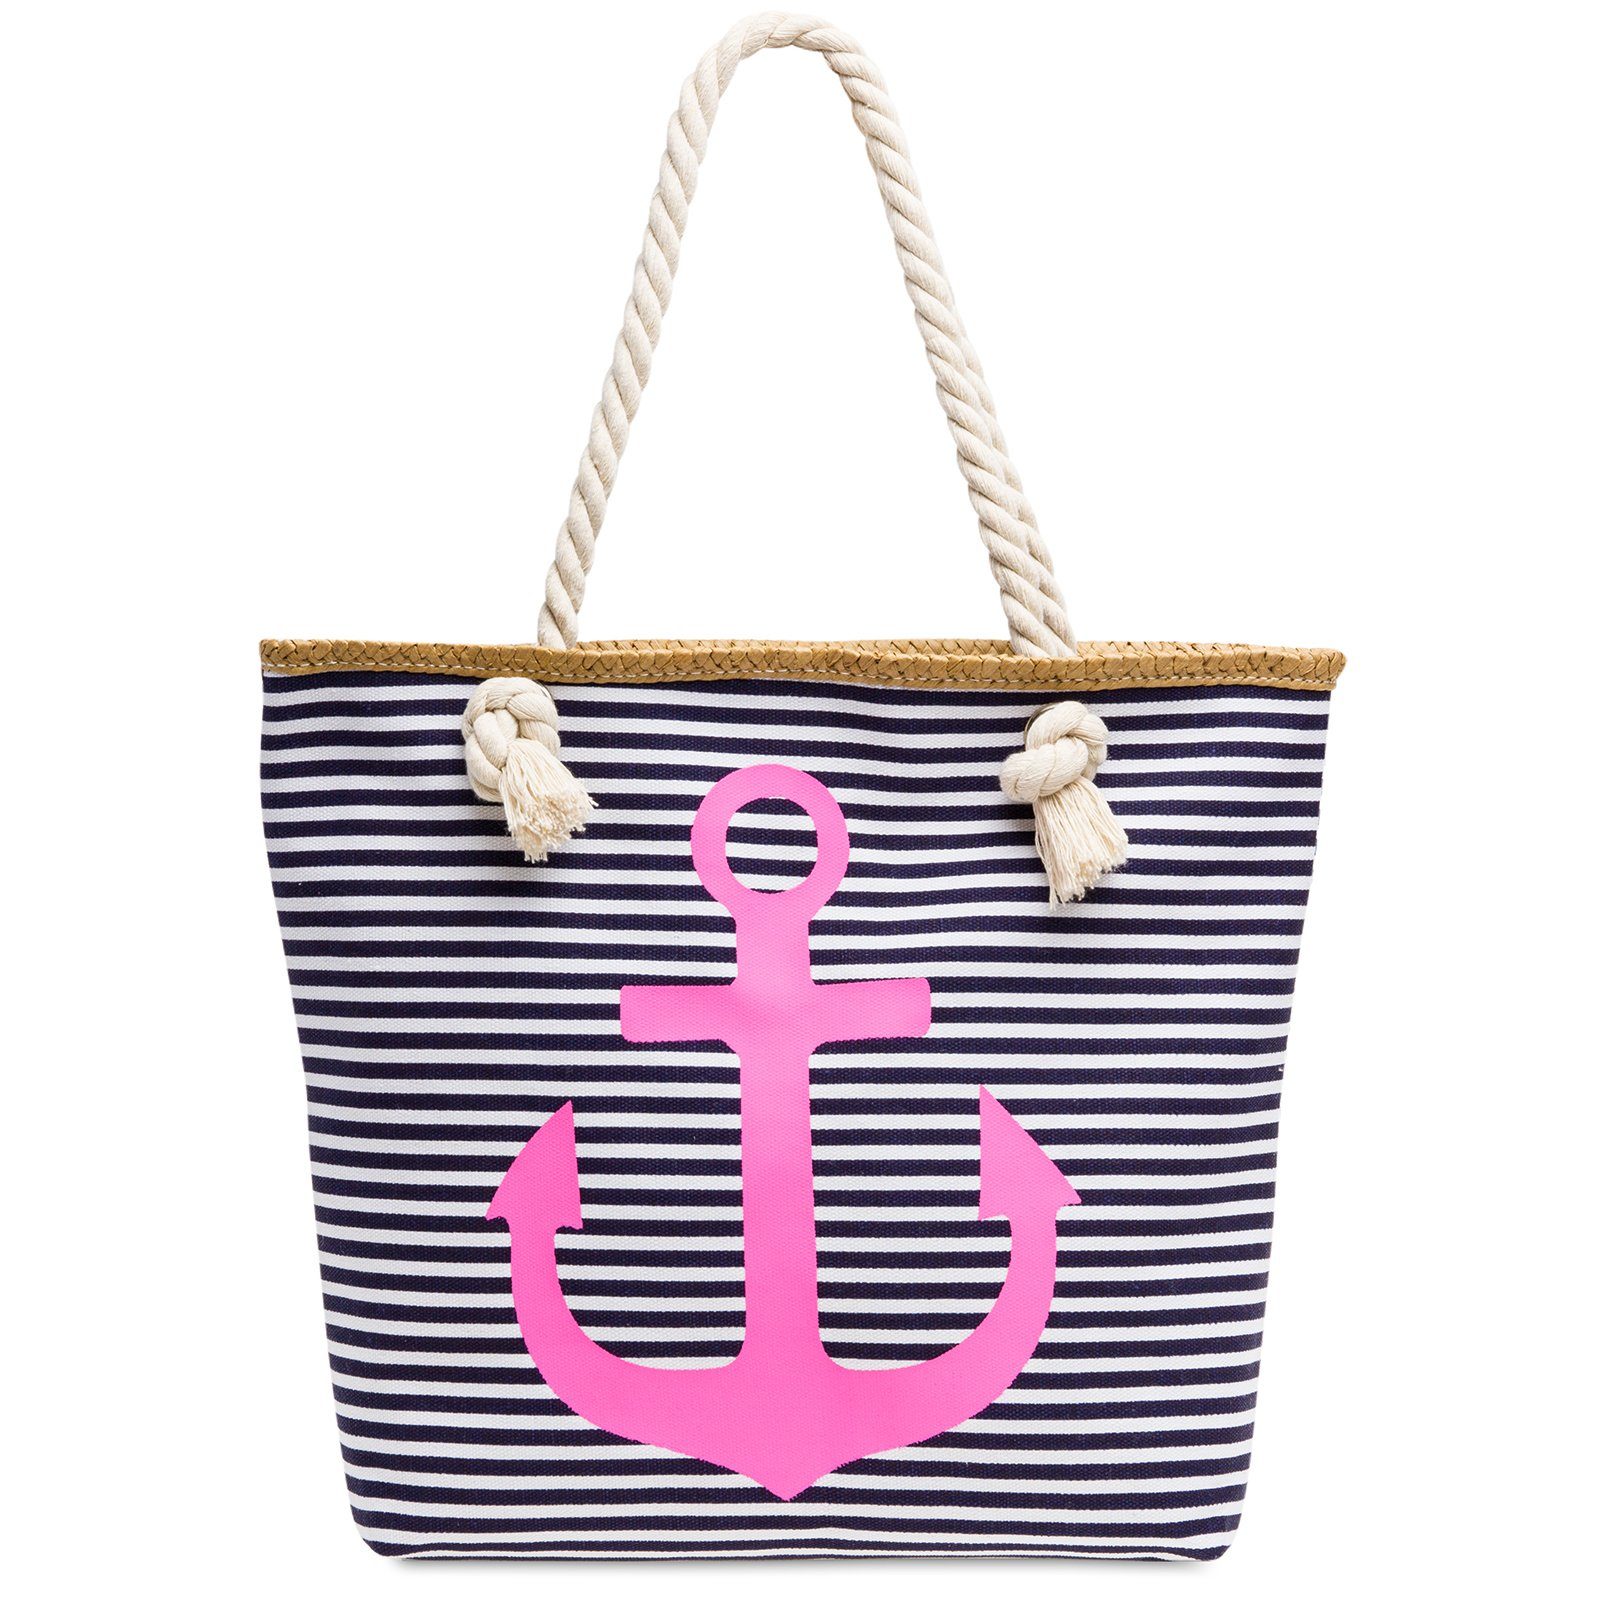 Caspar Strandtasche TS1040 Damen Strandtasche / Shopper mit Reißverschluss und maritimen Streifen ANKER Muster dunkelblau - pink